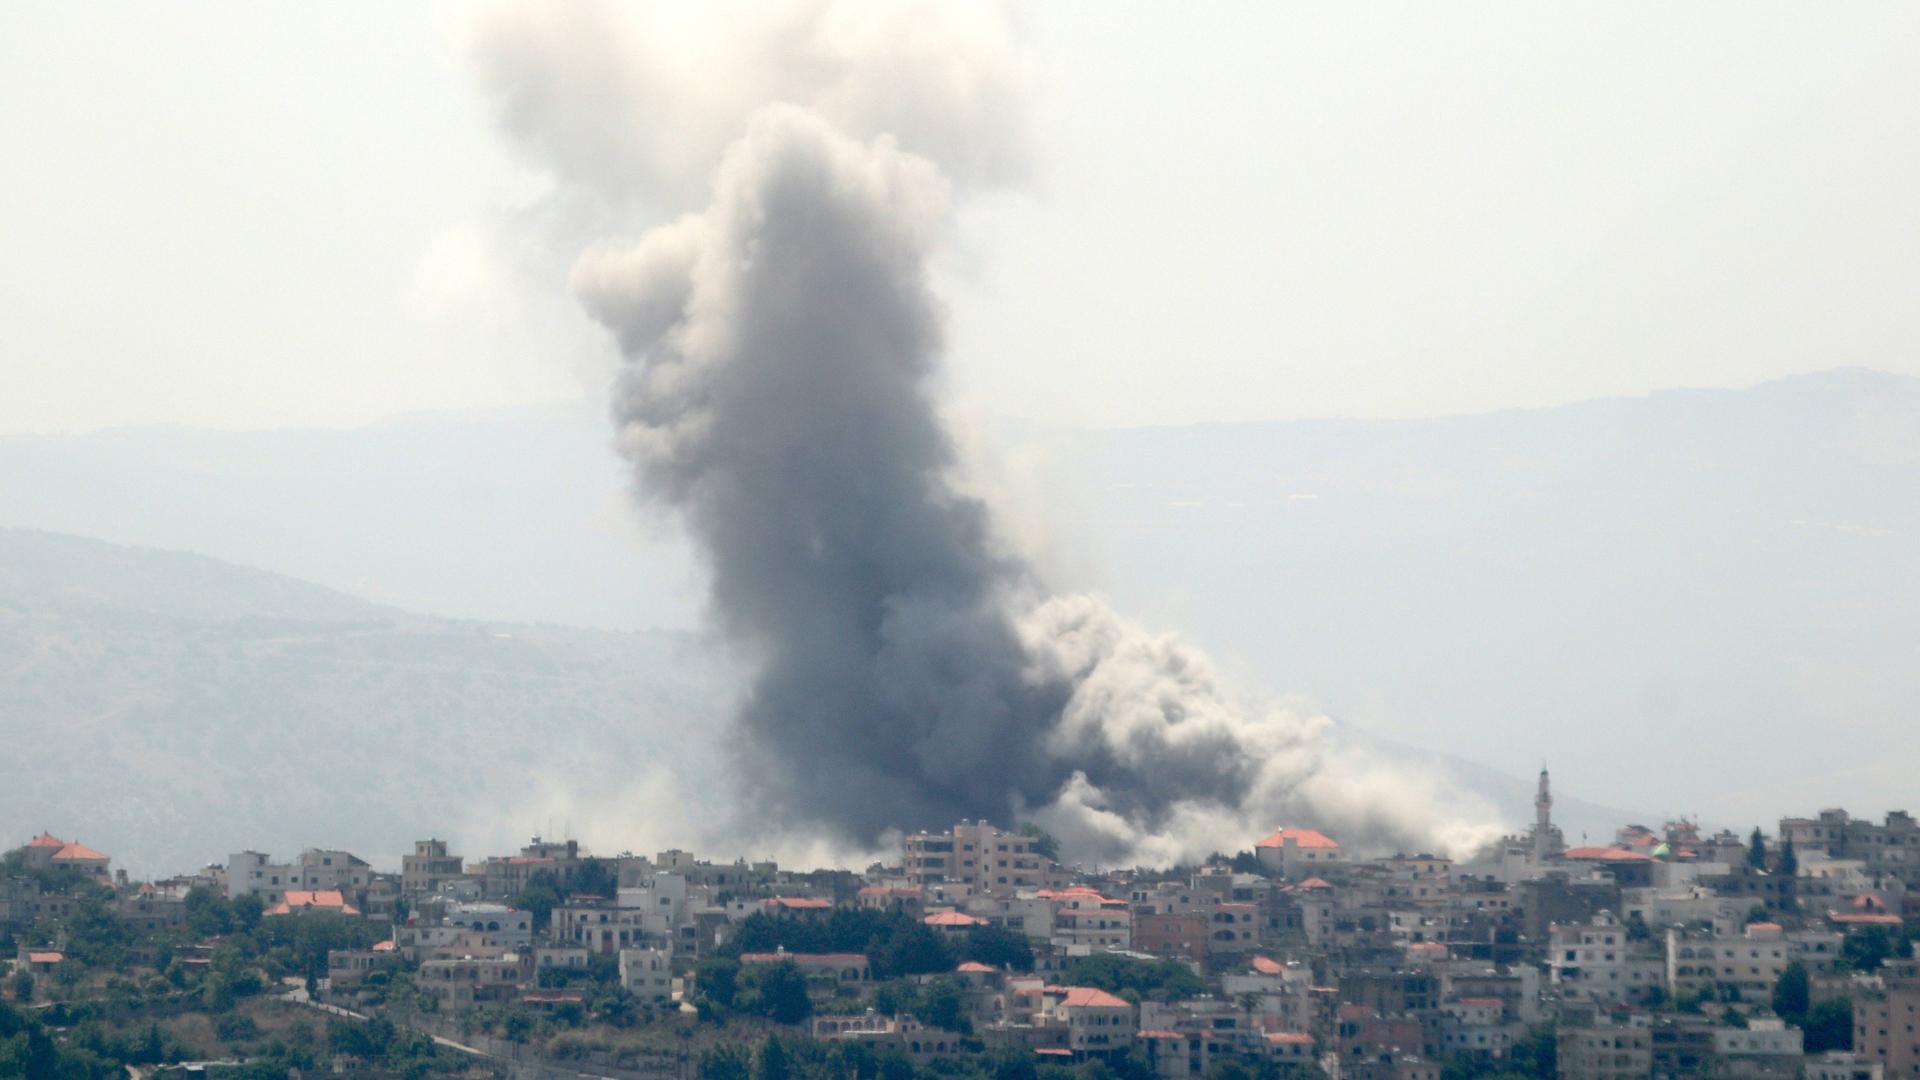 Eine dicke, grauschwarze Rauchsäule steht über den Ort Chiyam im Libanon. Ursache ist ein israelischer Luftangriff auf Hisbollah-Kämpfer. Drei Mitglieder der Miliz sollen dabei getötet worden sein. 